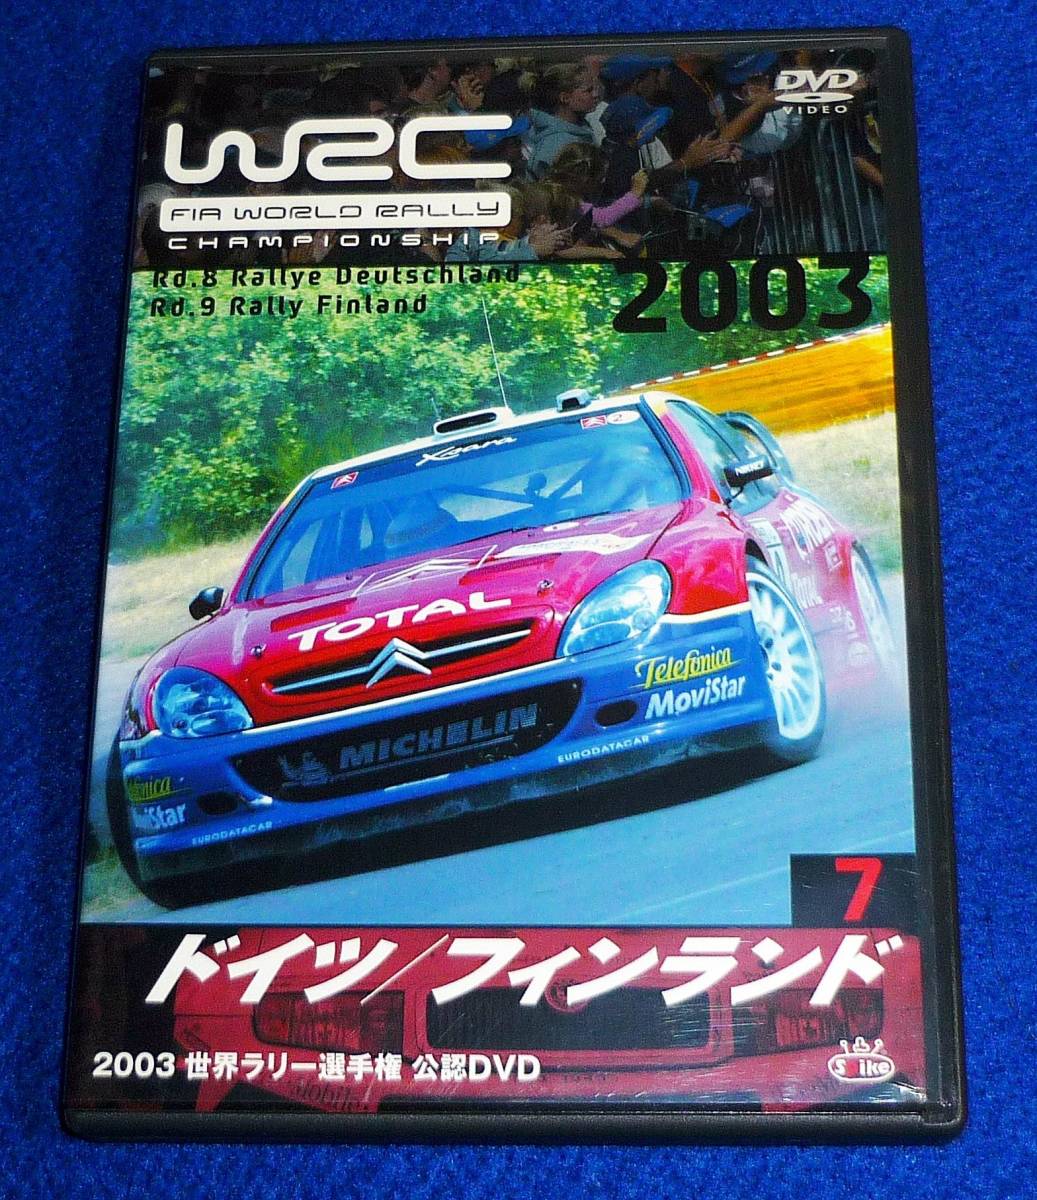  [DVD] WRC 世界ラリー選手権 2003 vol.7 ドイツ/フィンランド  ★  【D-1】の画像1